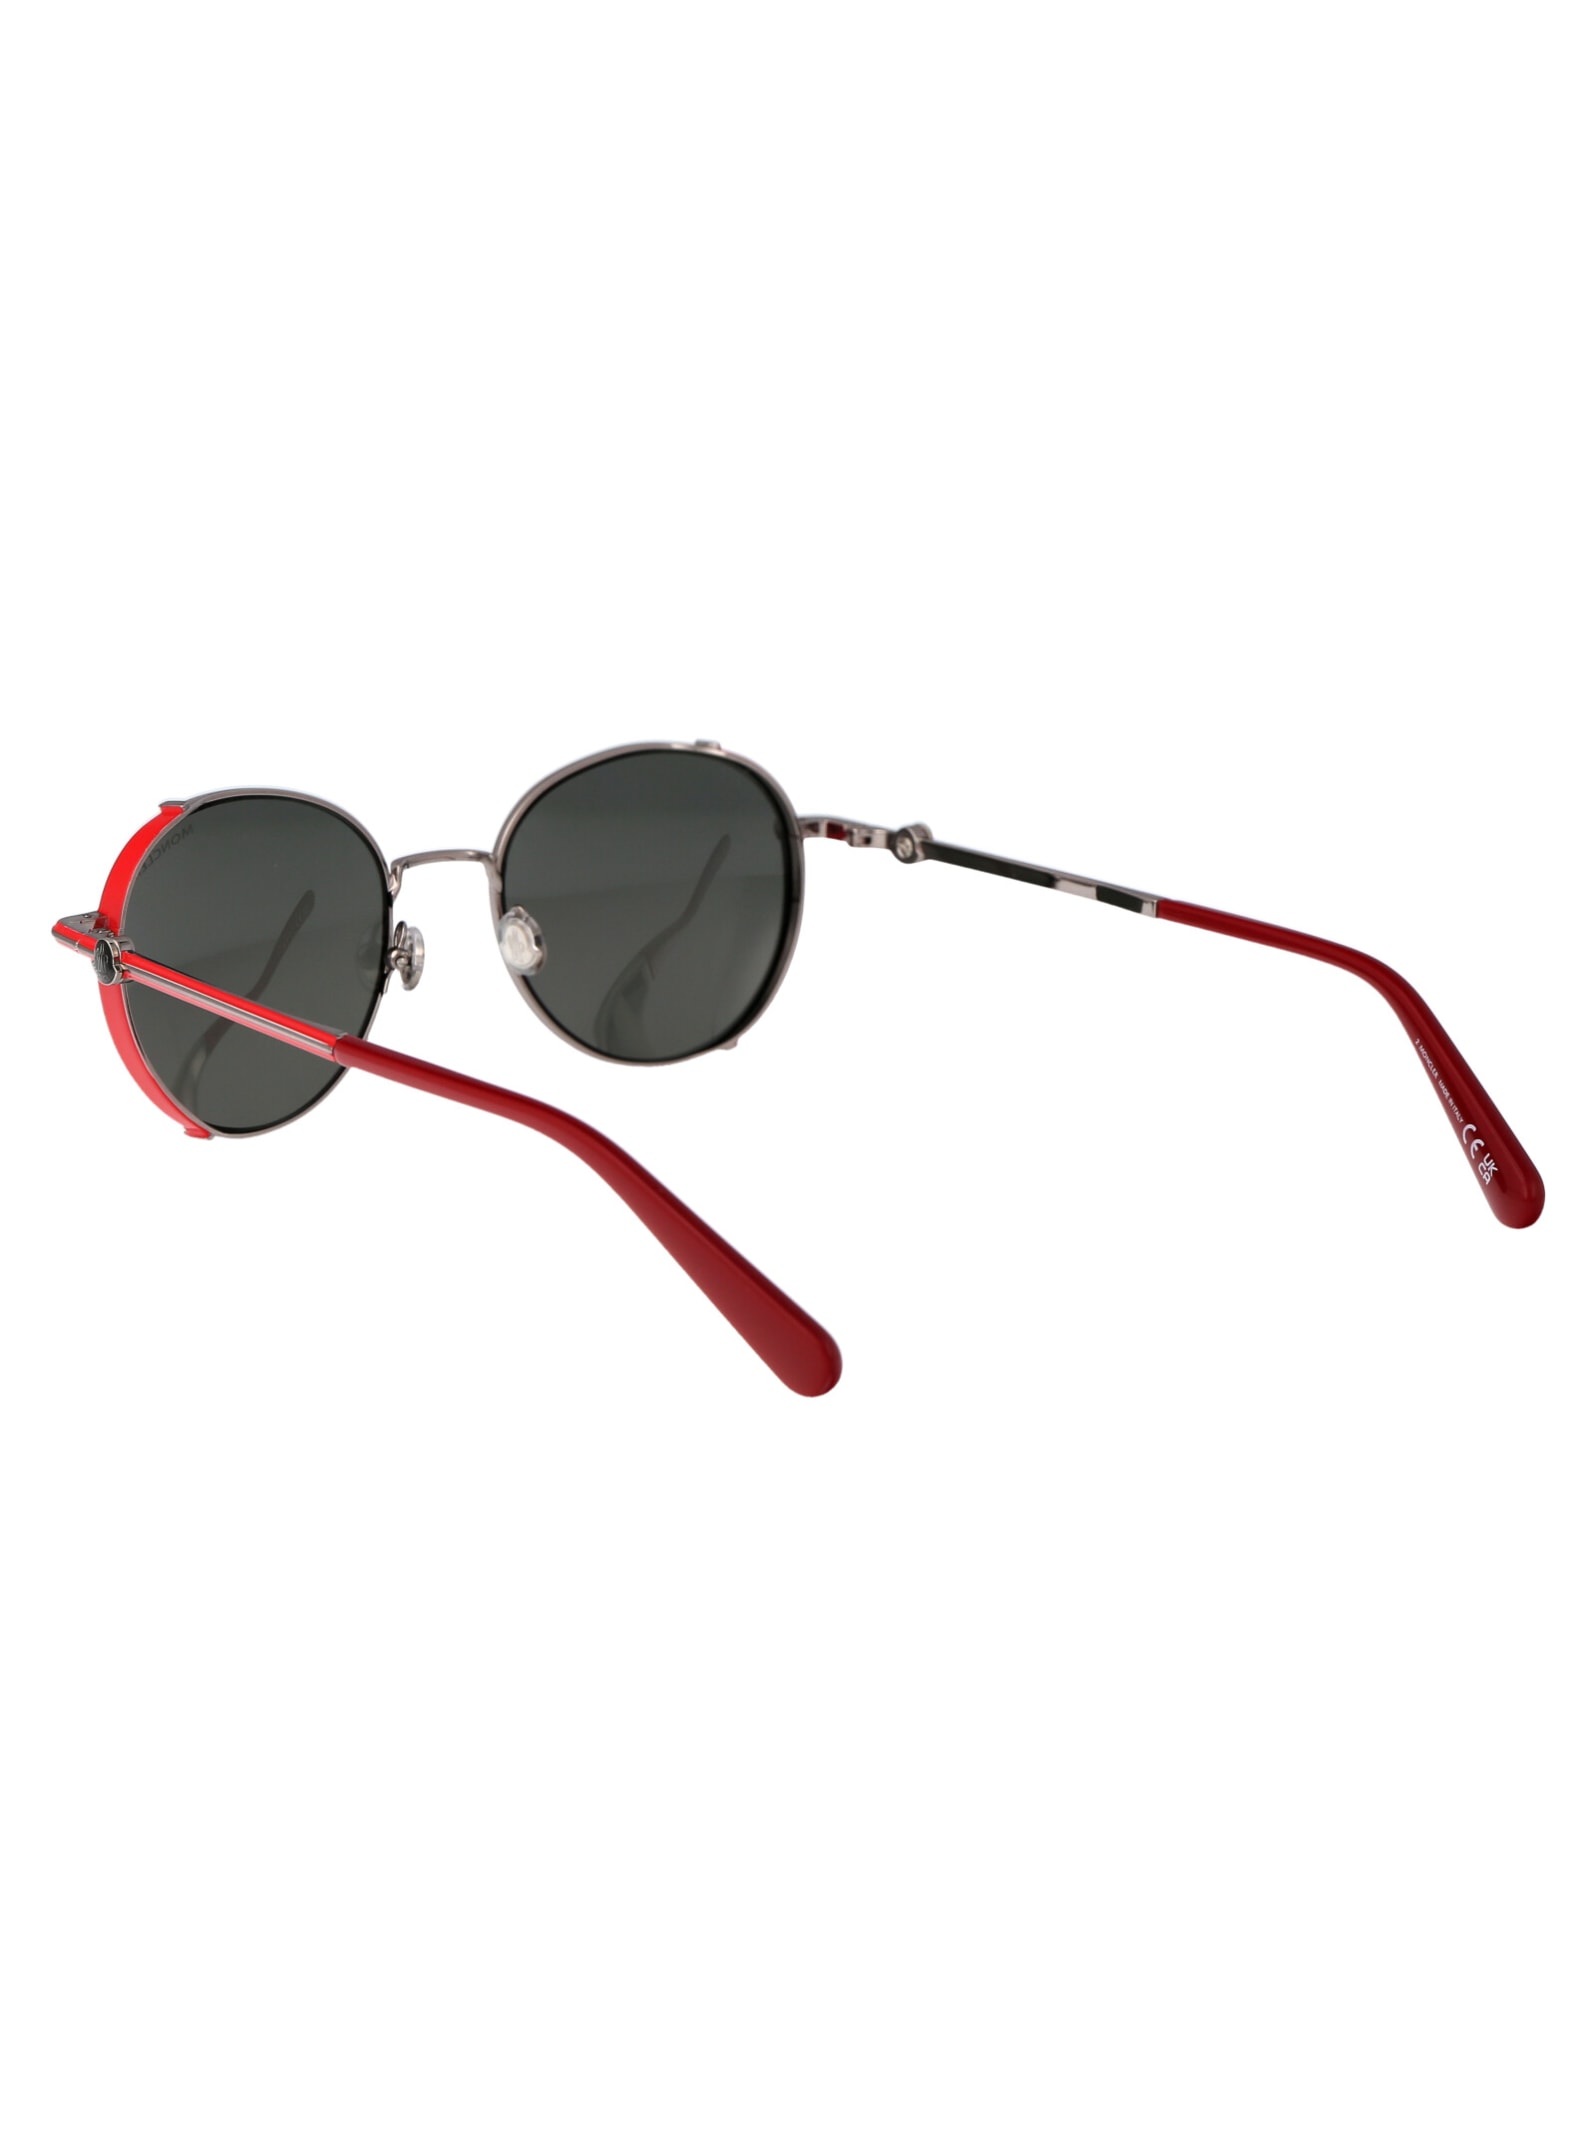 Shop Moncler Ml0286 Sunglasses In 14 Rutenio Chiaro Lucido